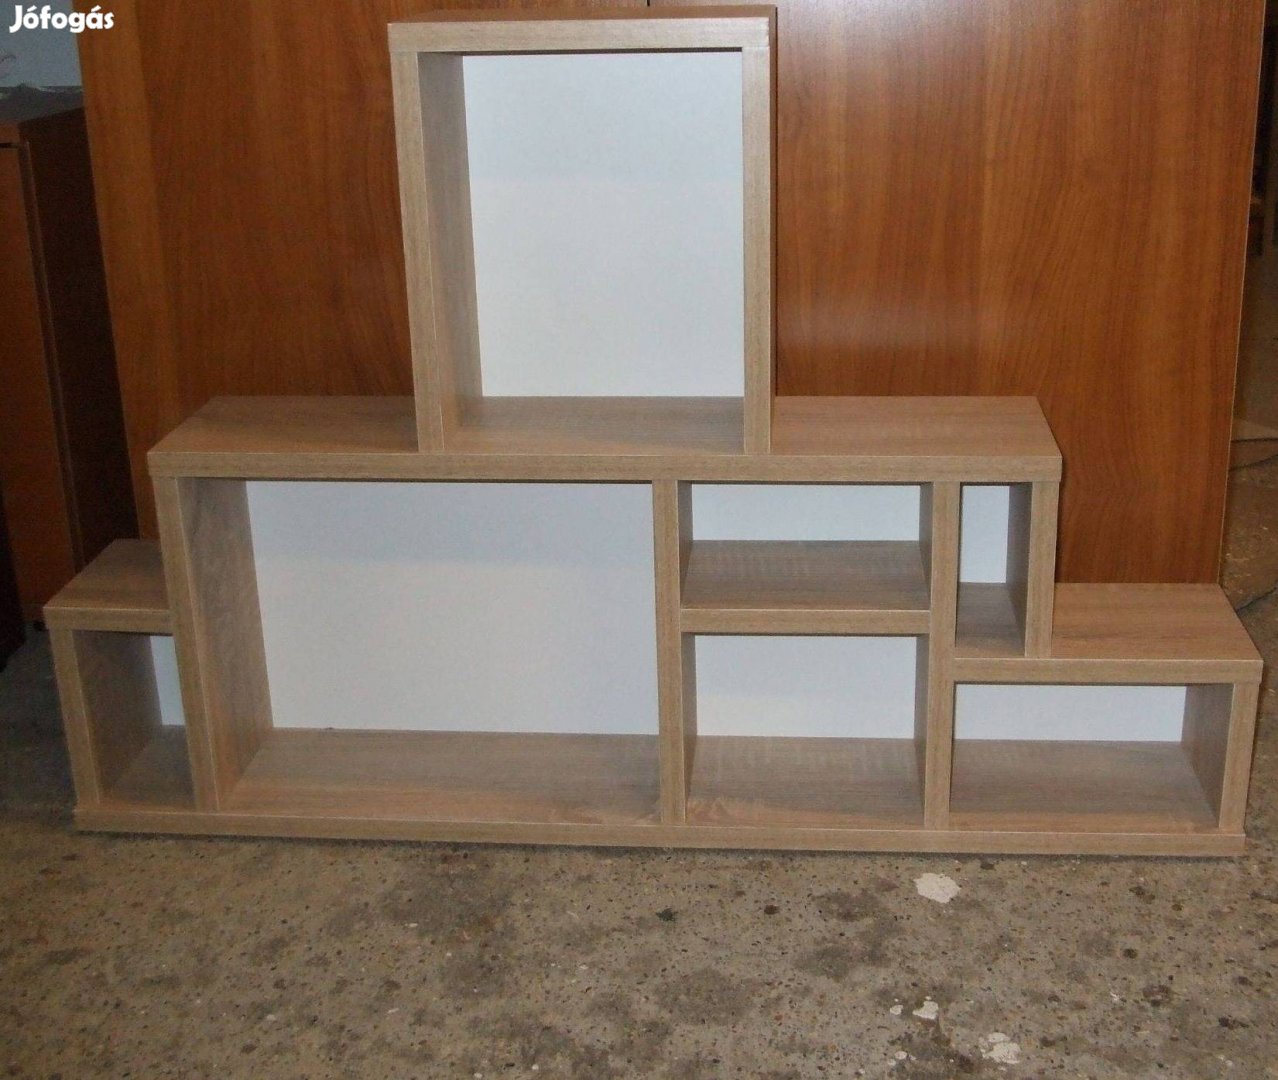 Új fali polc konyha előszoba gyerekszoba bútor FPp 90 cm széles